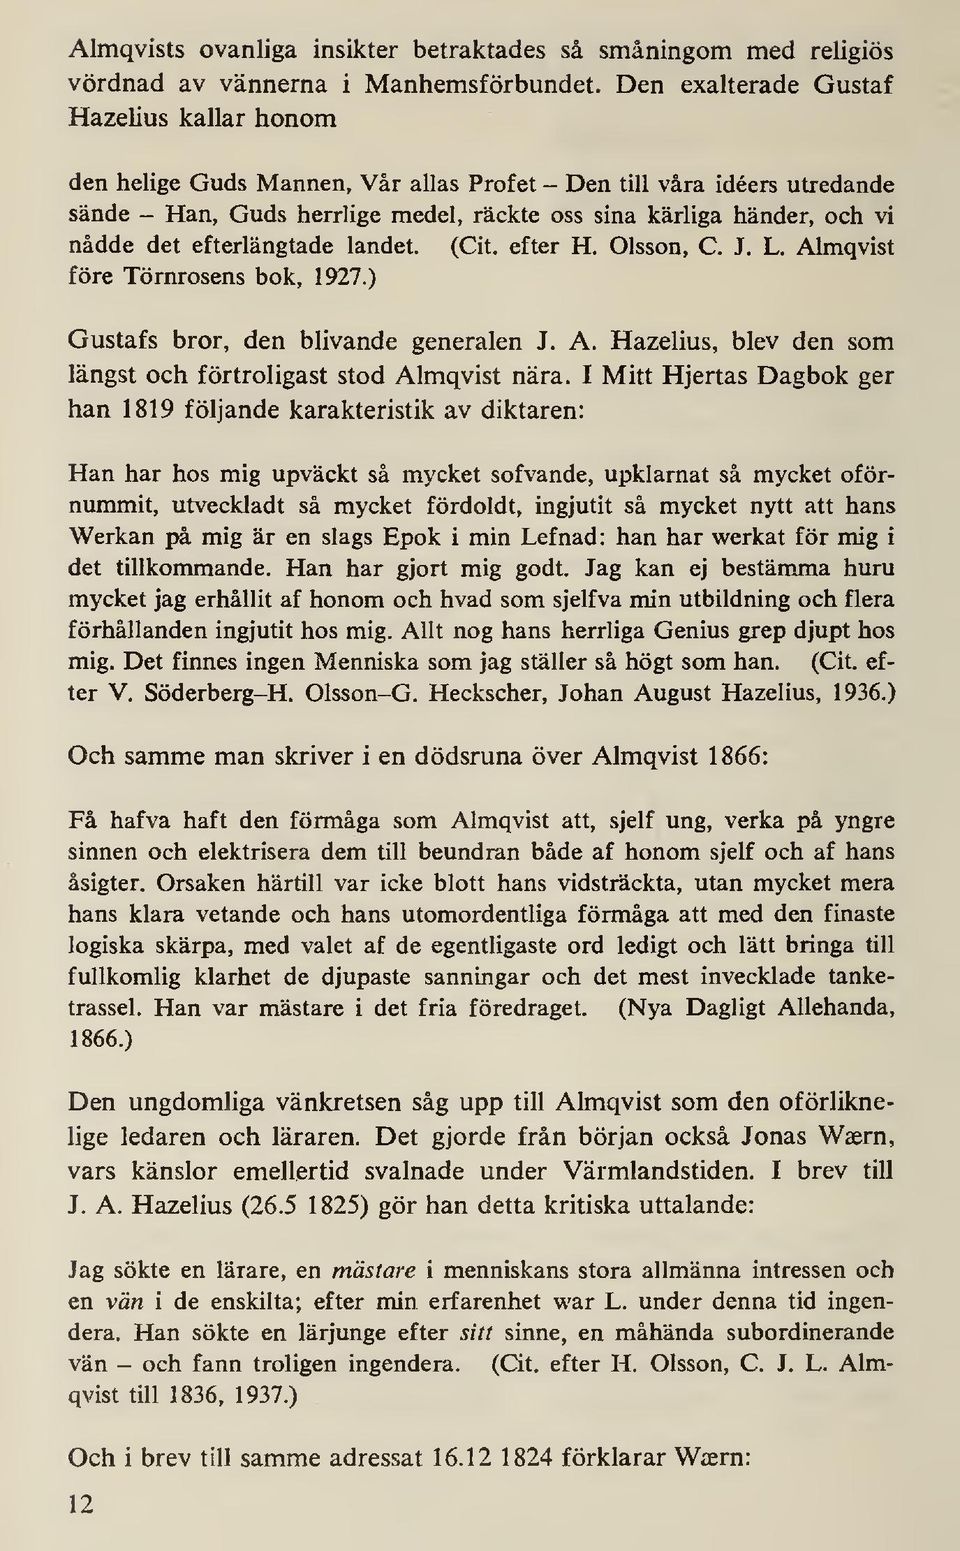 det efterlängtade landet. (Cit. efter H. Olsson, C. J. L. Almqvist före Törnrosens bok, 1927.) Gustafs bror, den blivande generalen J. A. Hazelius, blev den som längst och förtroligast stod Almqvist nära.